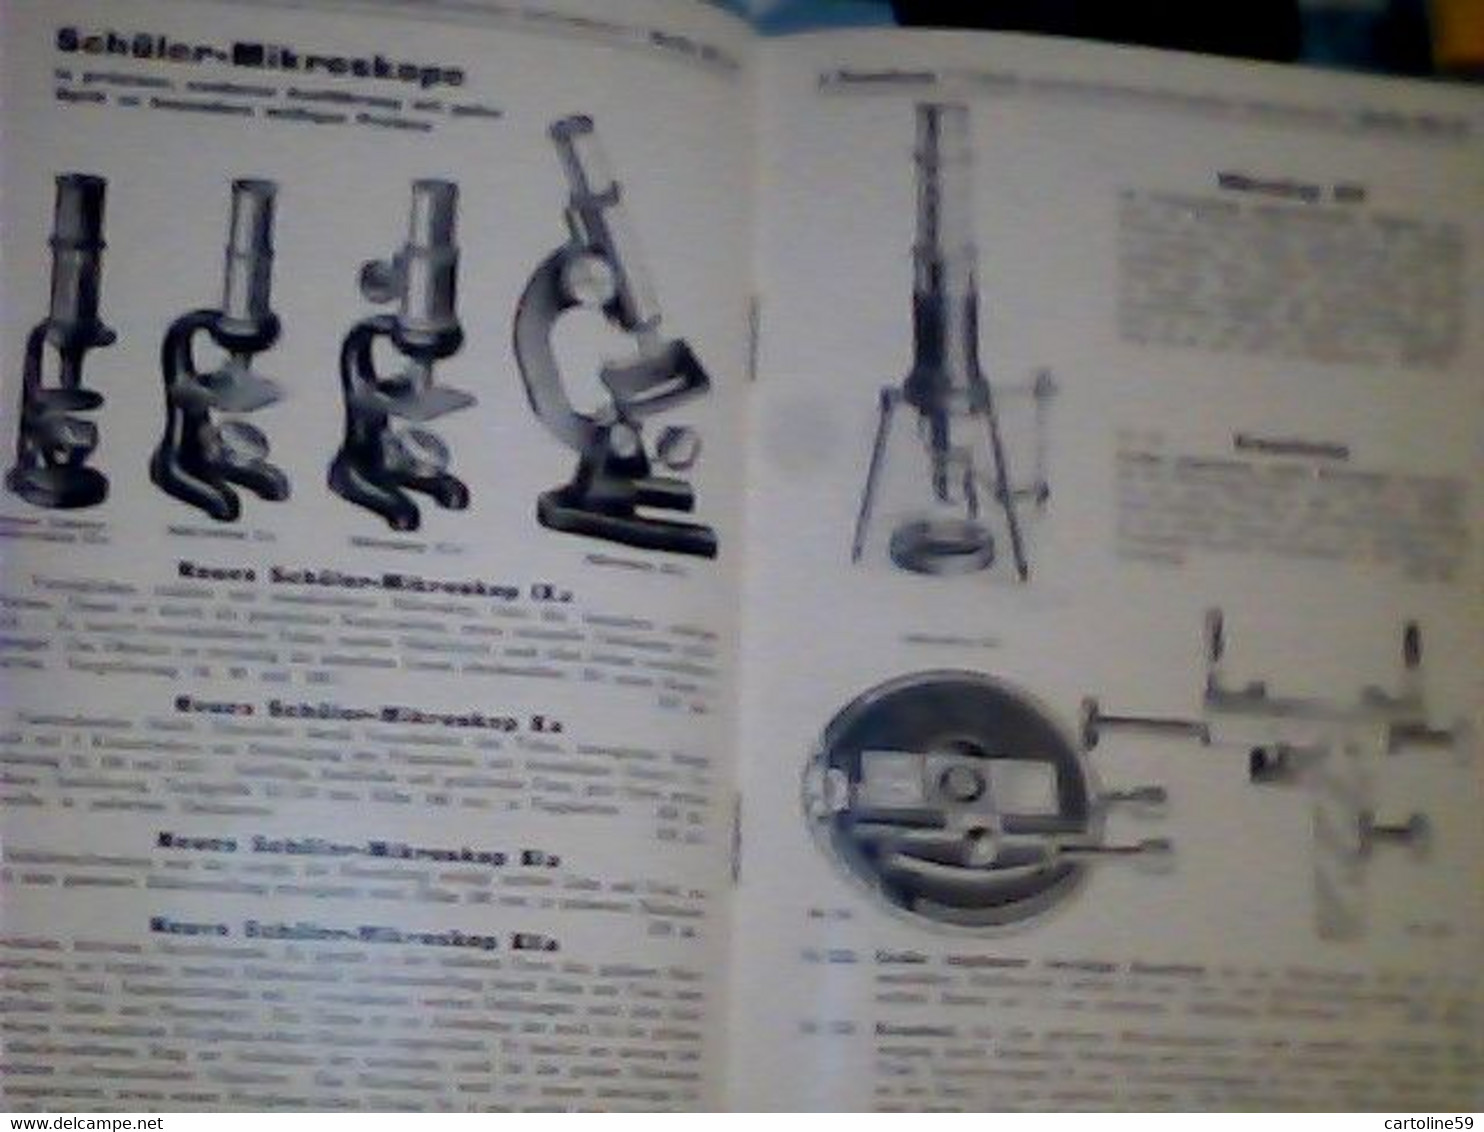 LIBRETTO MICROSCOPIO ROSENBAUM BERLIN FABRIK OPTISCH MIKROSKOP PREISLISTELETTER 1932 IQ8312 - Kataloge